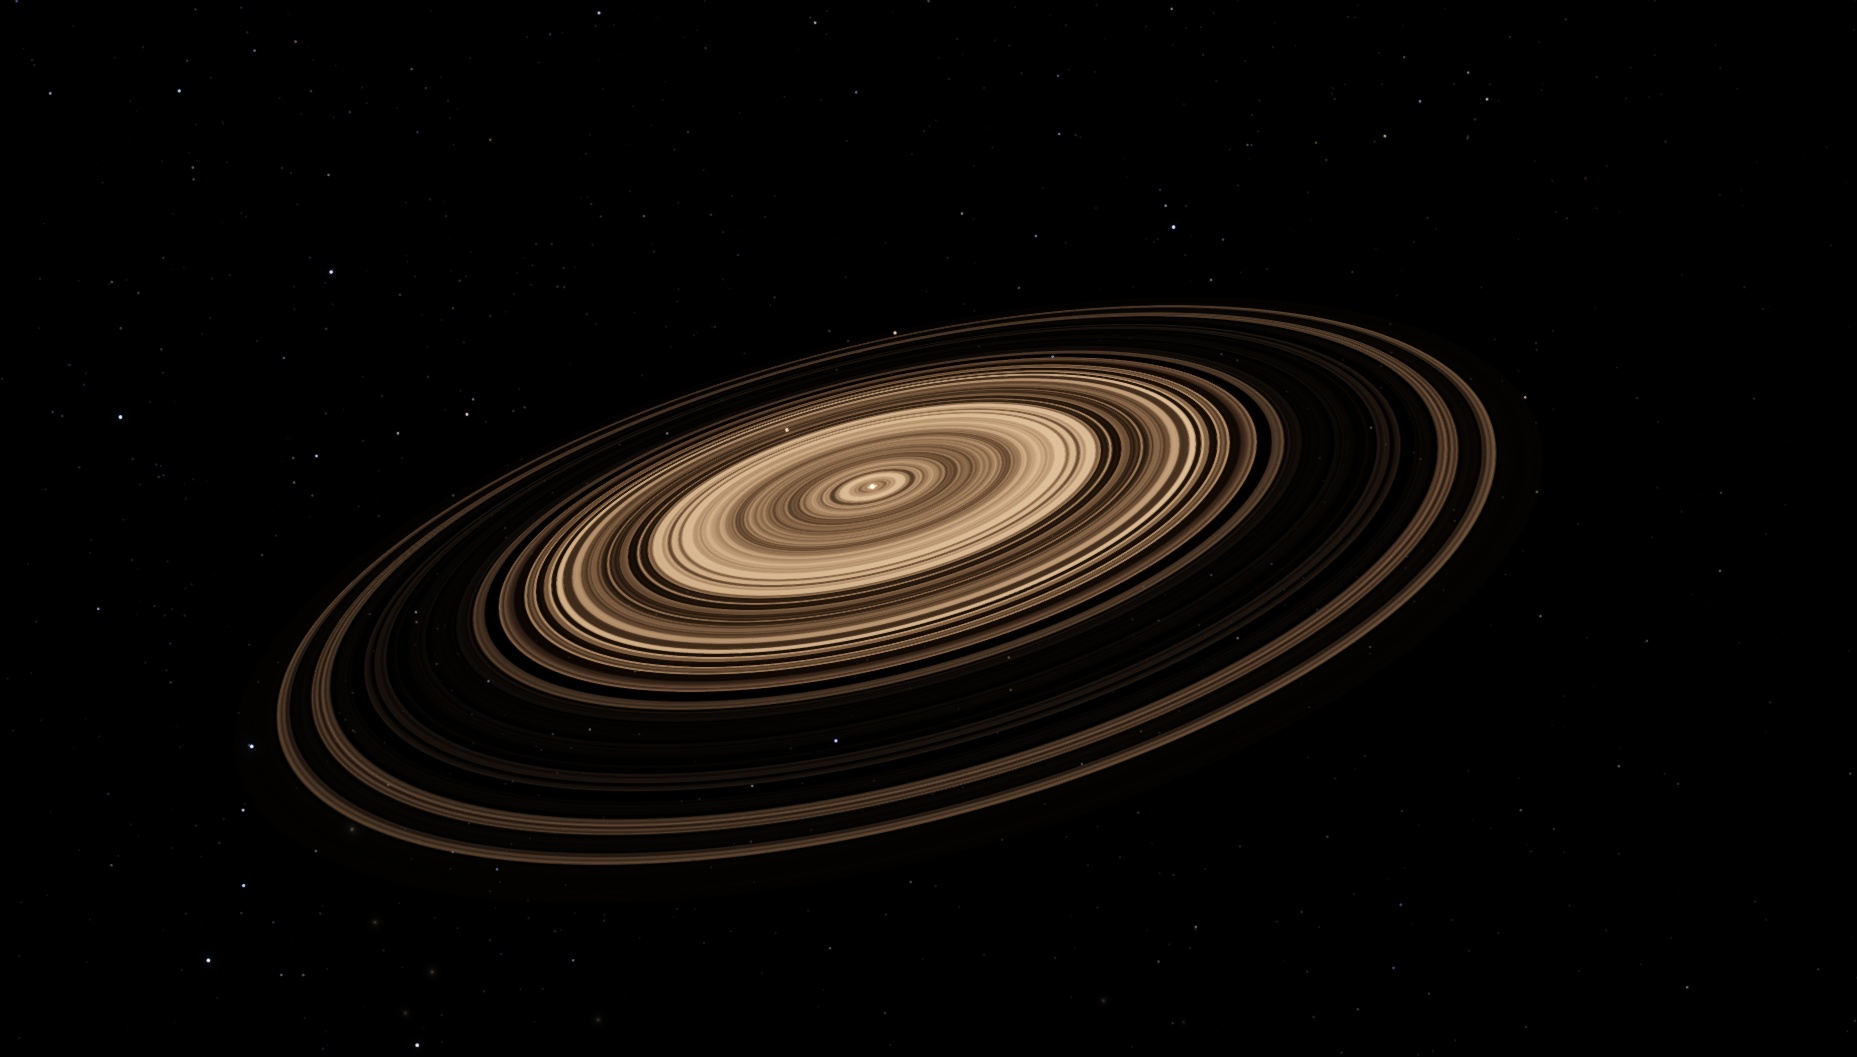 Самая большая система солнечной системы сатурн. 1swasp j1407 b. J1407b. Супер Сатурн j1407b. Планета 1swasp j1407.